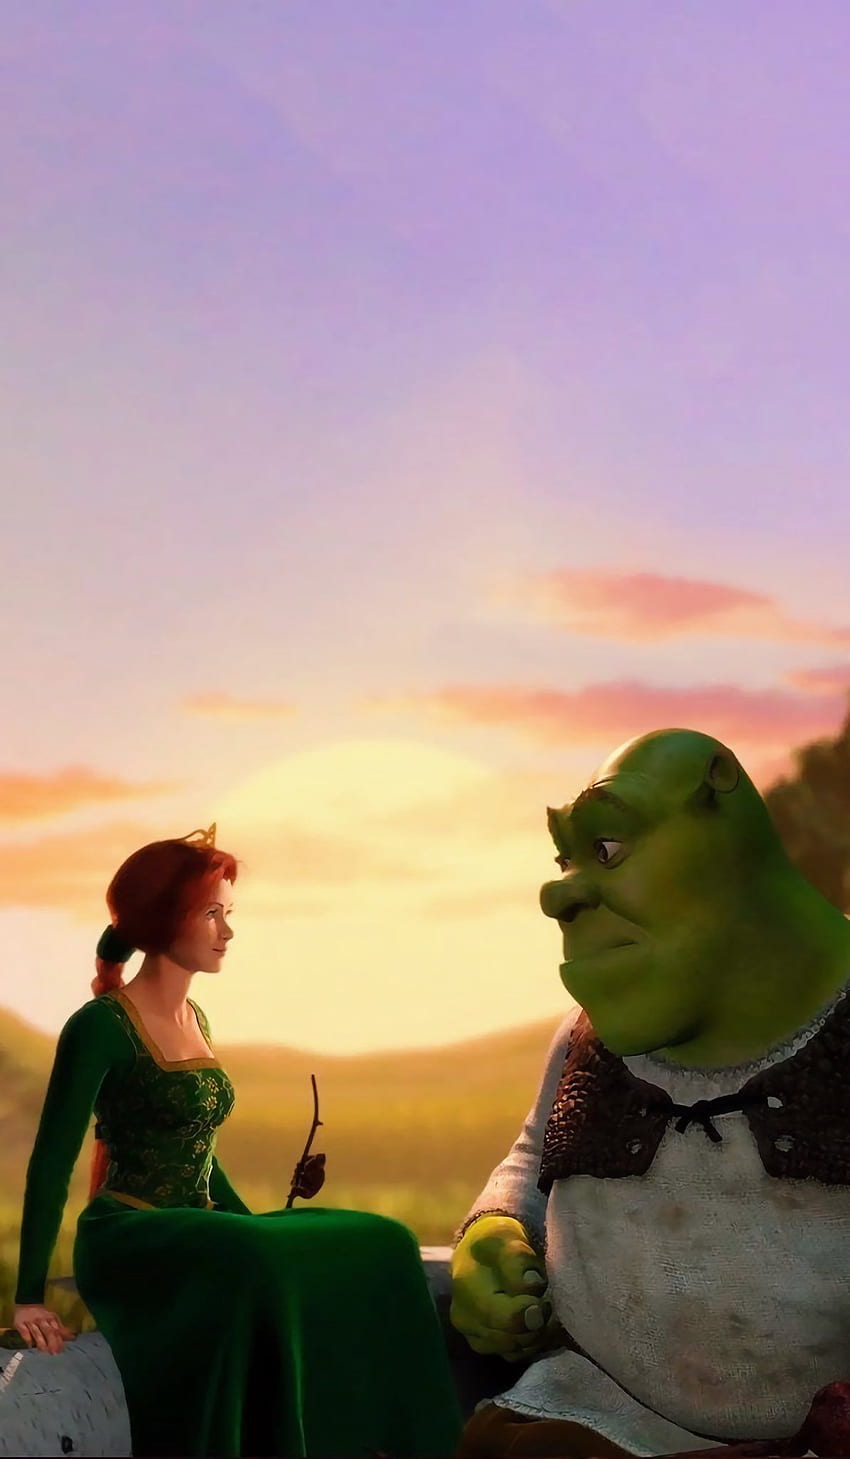 Shrek na Twitterze w 2021 roku. Księżniczka Fiona, Shrek, Fiona Shrek Tapeta na telefon HD